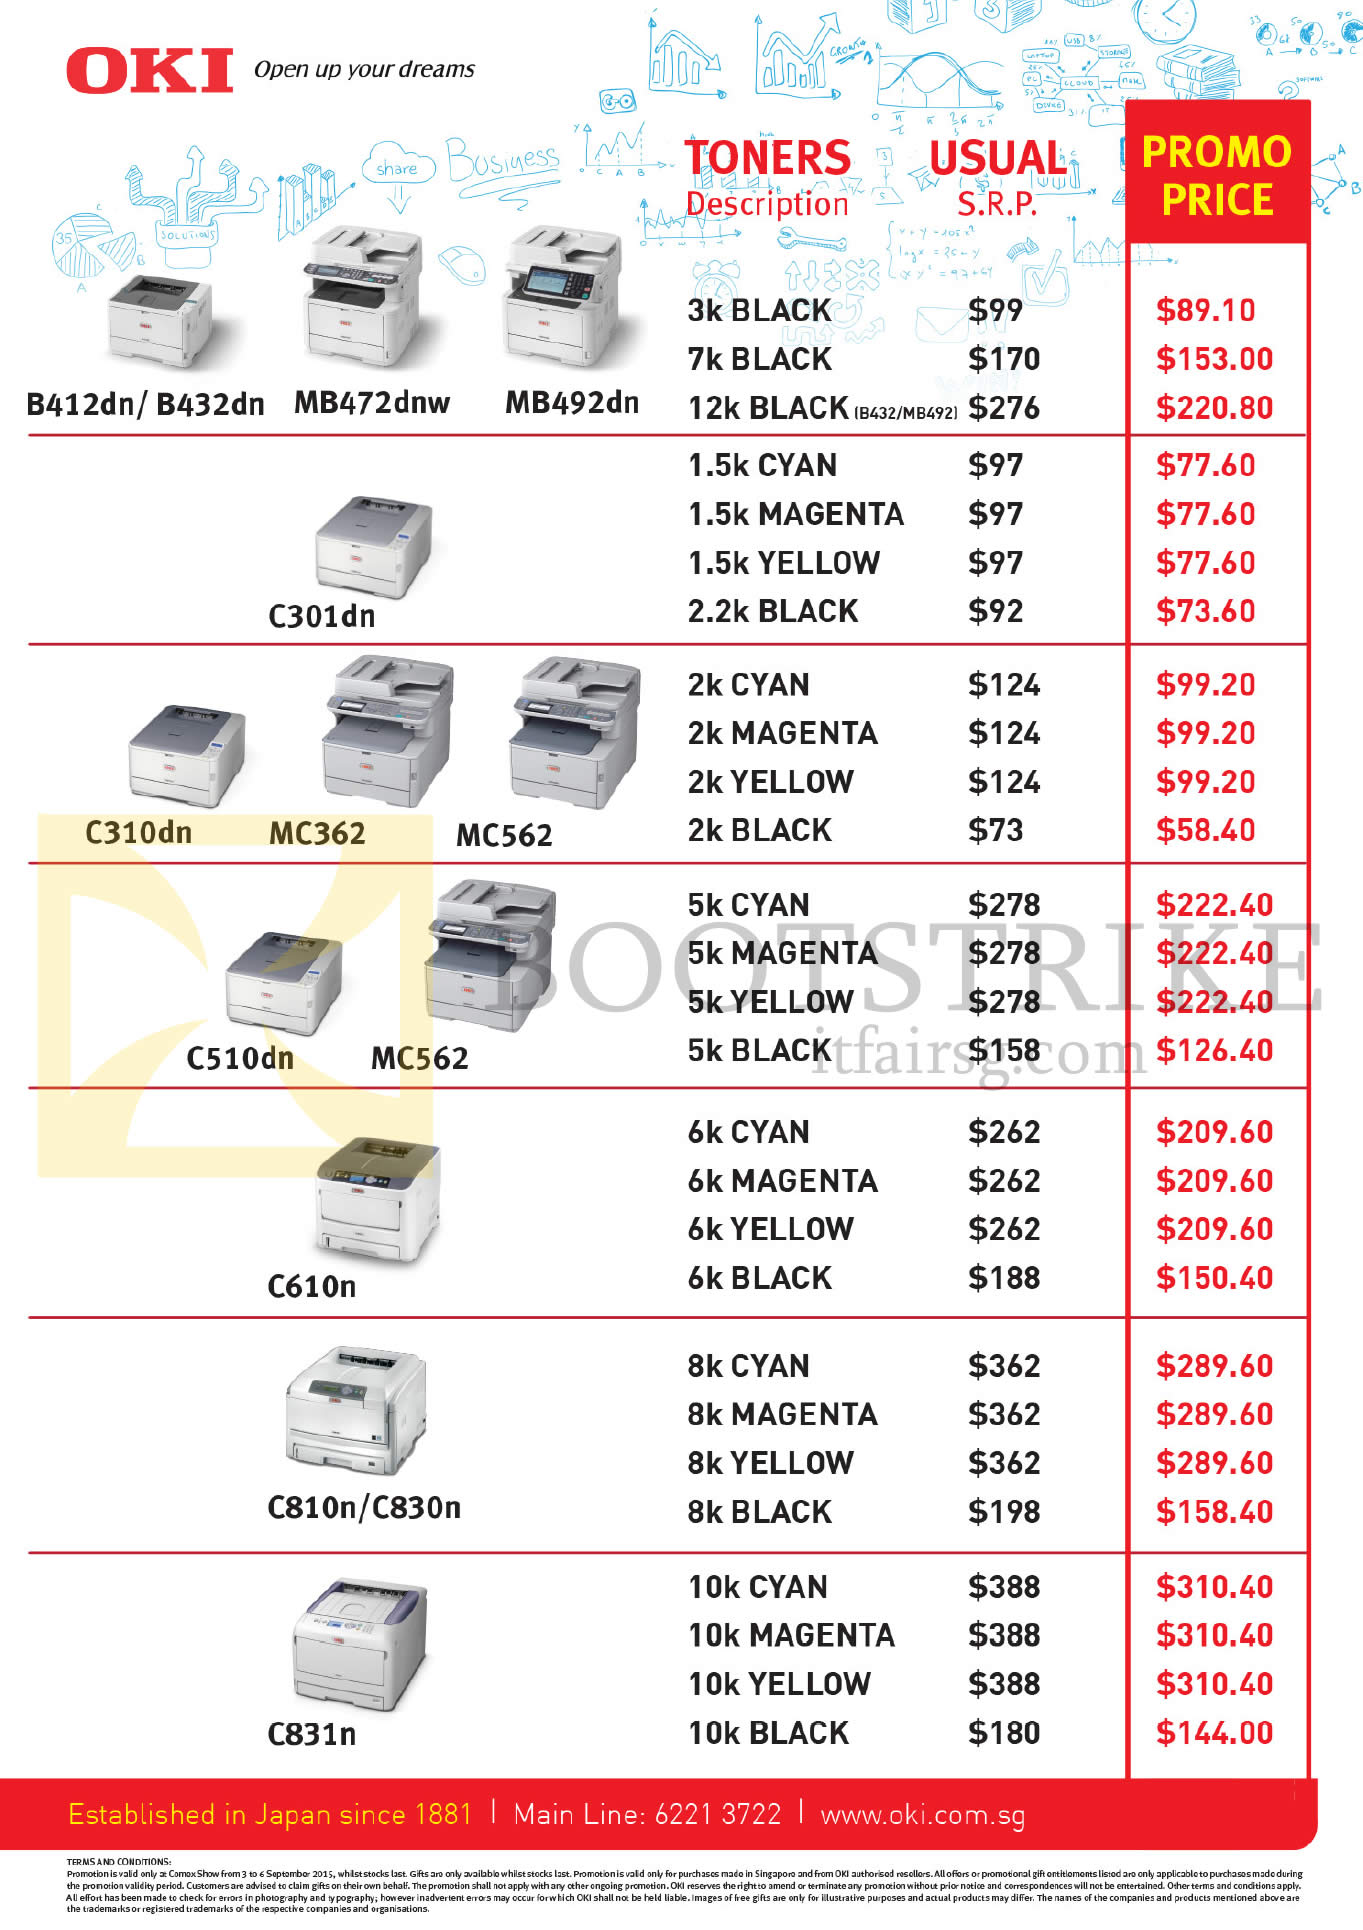 COMEX 2015 price list image brochure of OKI Printer Toners B412dn, B432dn, MB472dnw, MB492dn, C301dn, MC362, MC562, C510dn, MC562, C610n, C810n, C830n, C831n